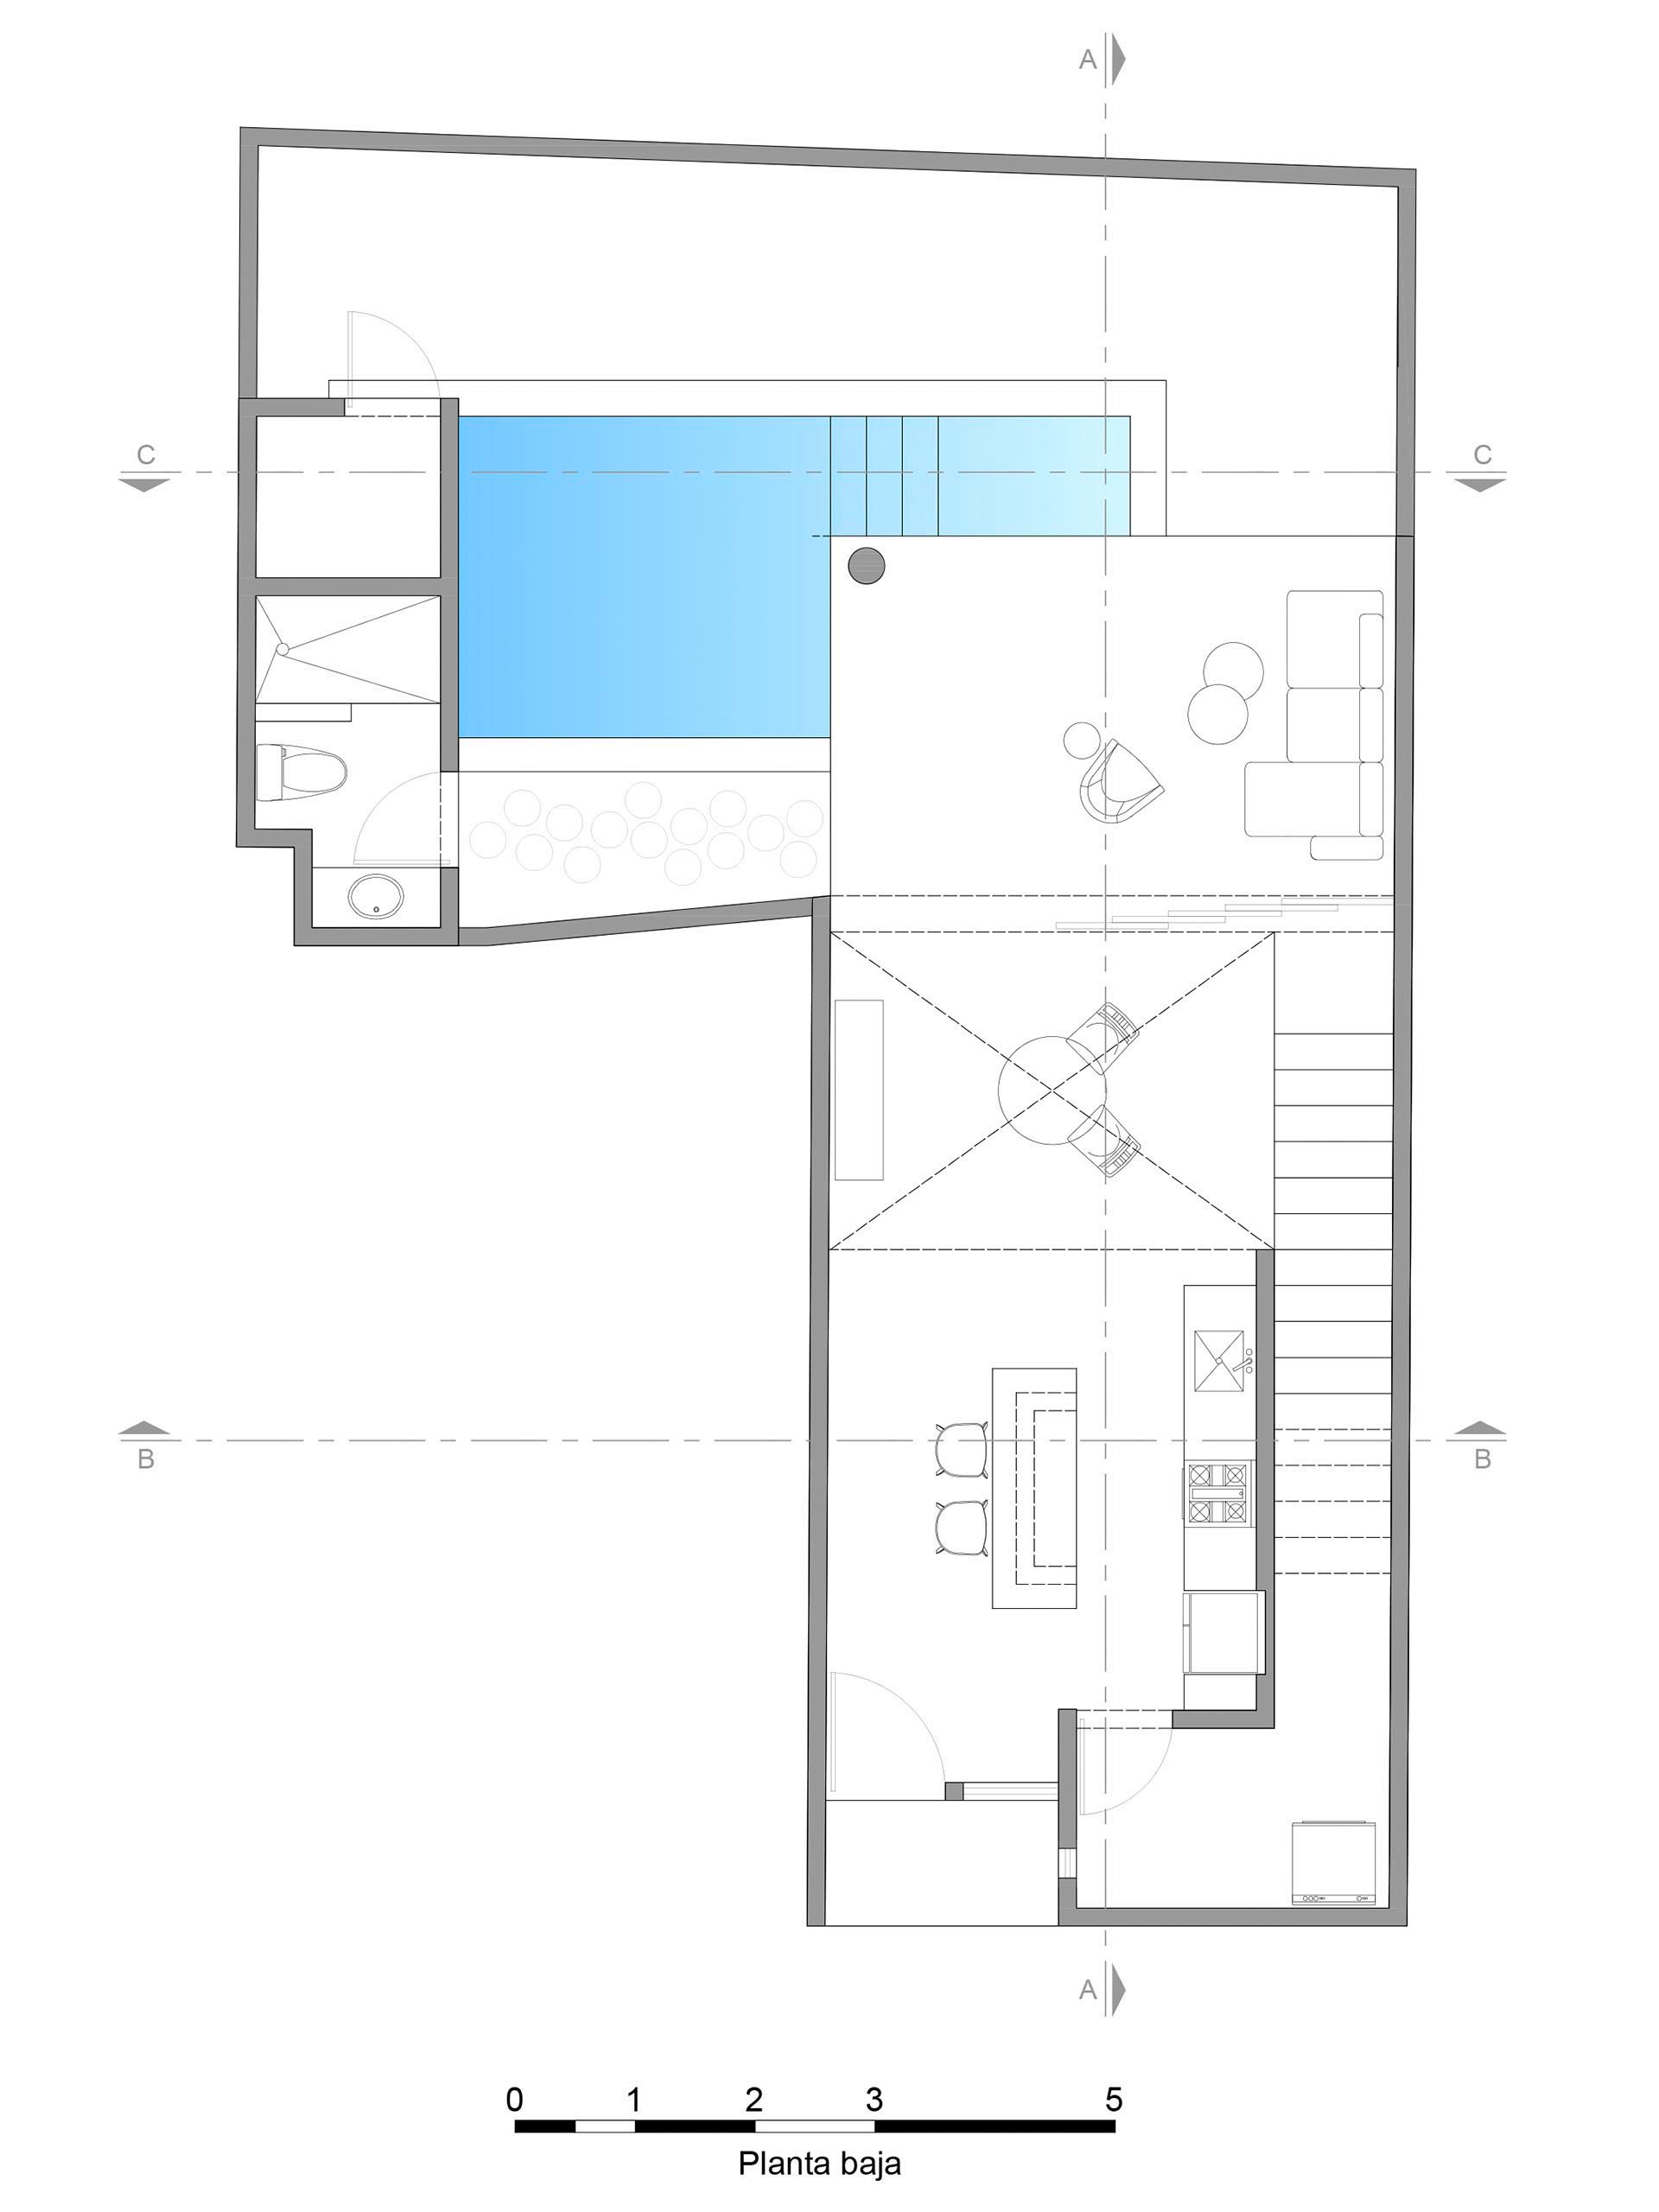 Поэтажный план современного дома с бассейном.